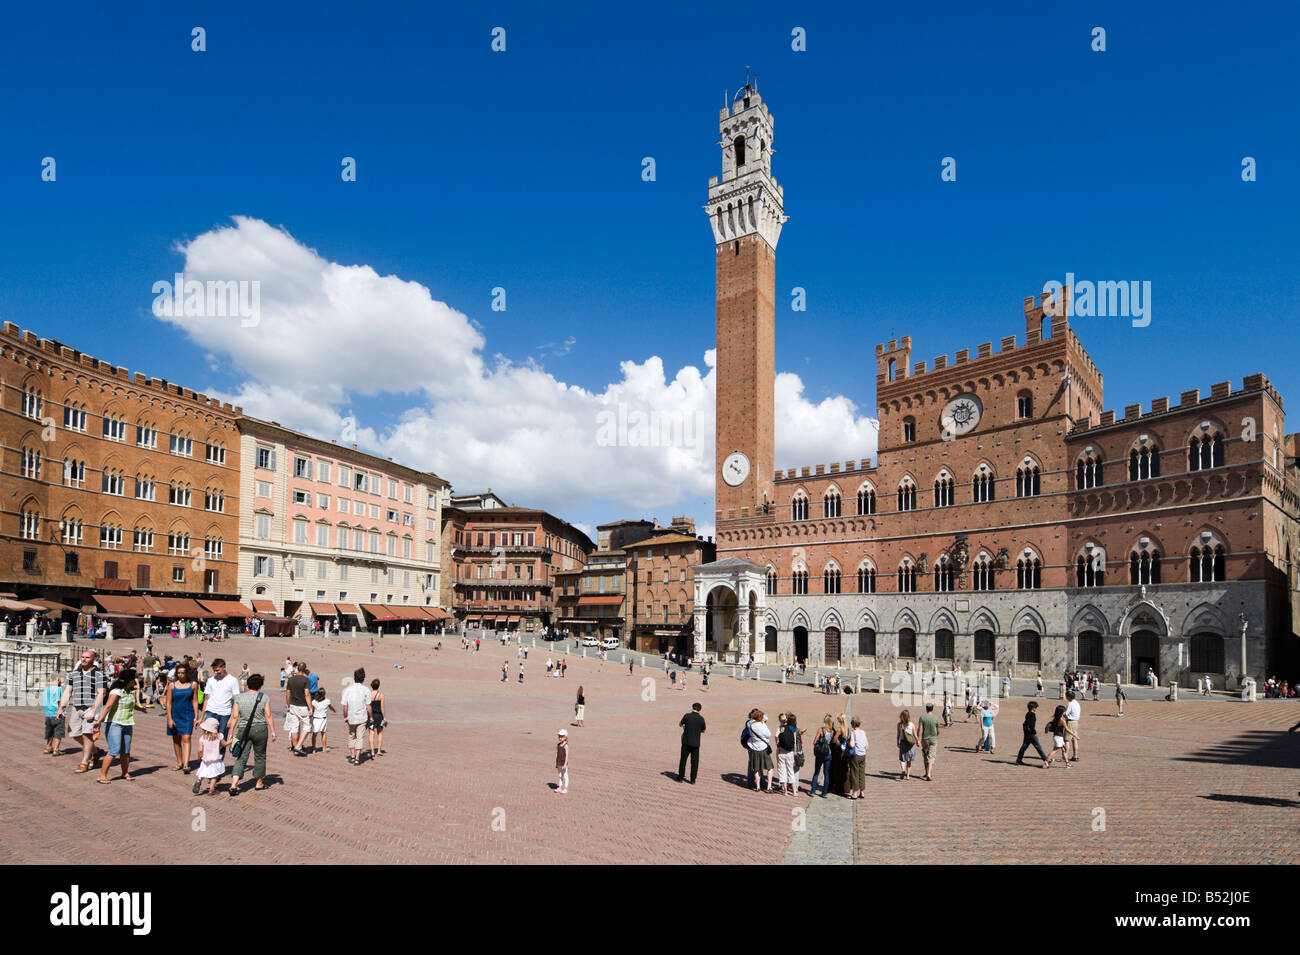 La Torre del Mangia et le Palazzo Pubblico, dans le Campo, Sienne, Toscane, Italie Banque D'Images